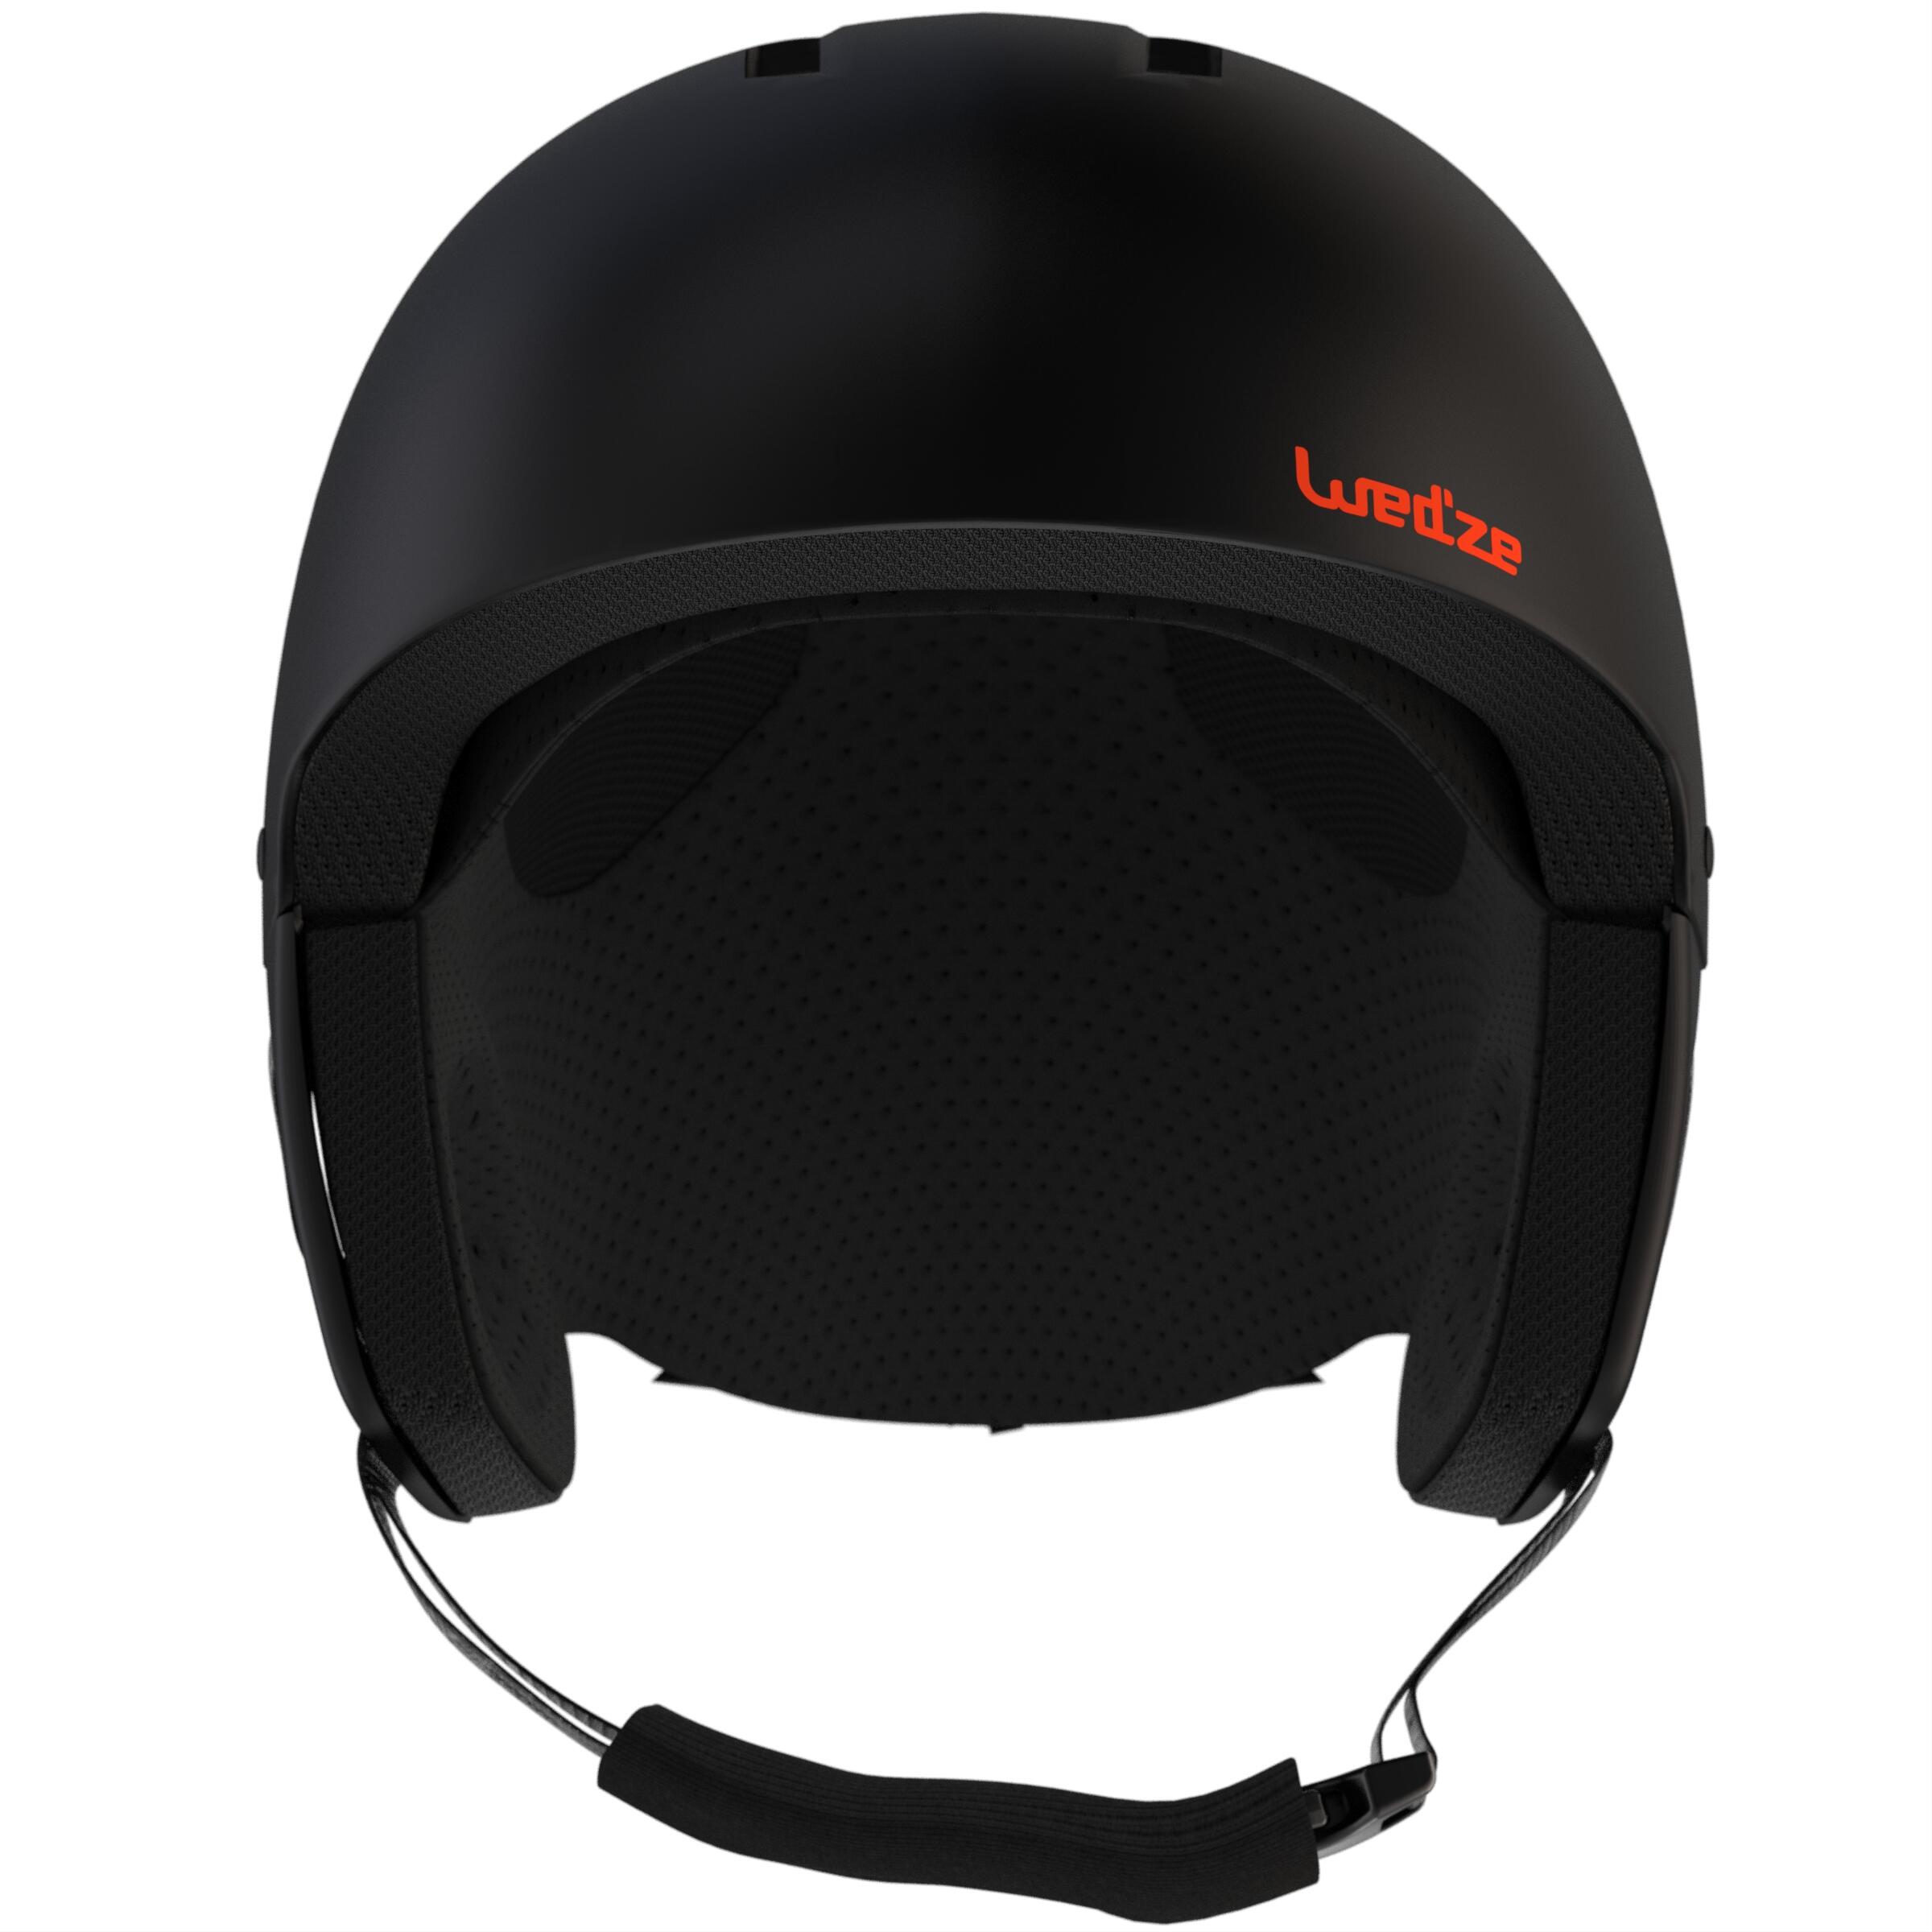 Kids' Ski Helmet - KD 500 Black - WEDZE